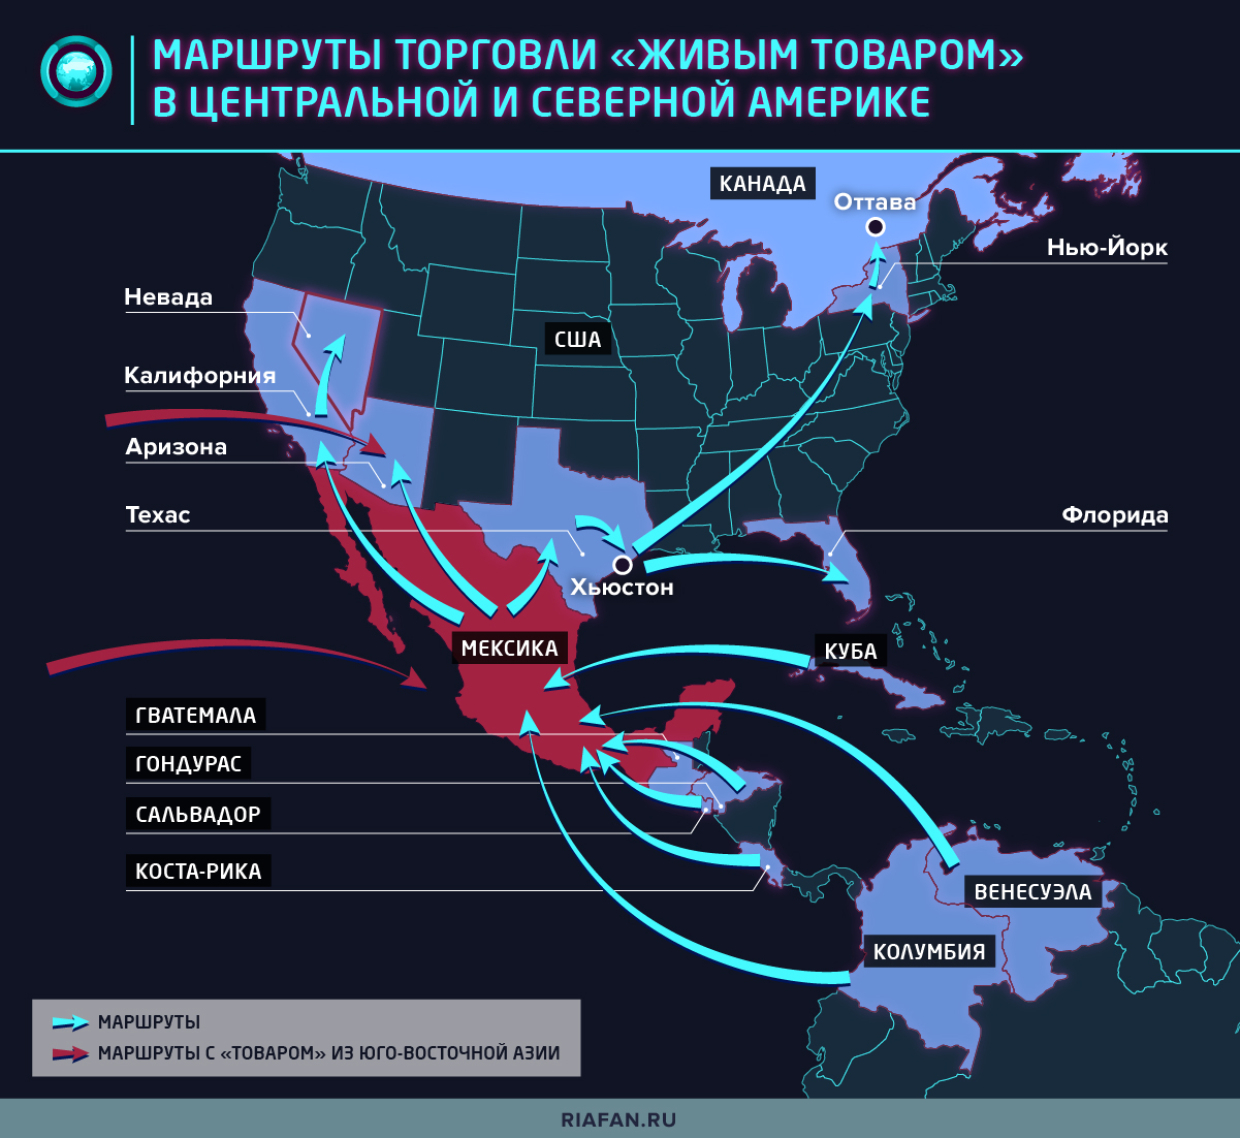 Как нелегально попасть в США через границу с Мексикой